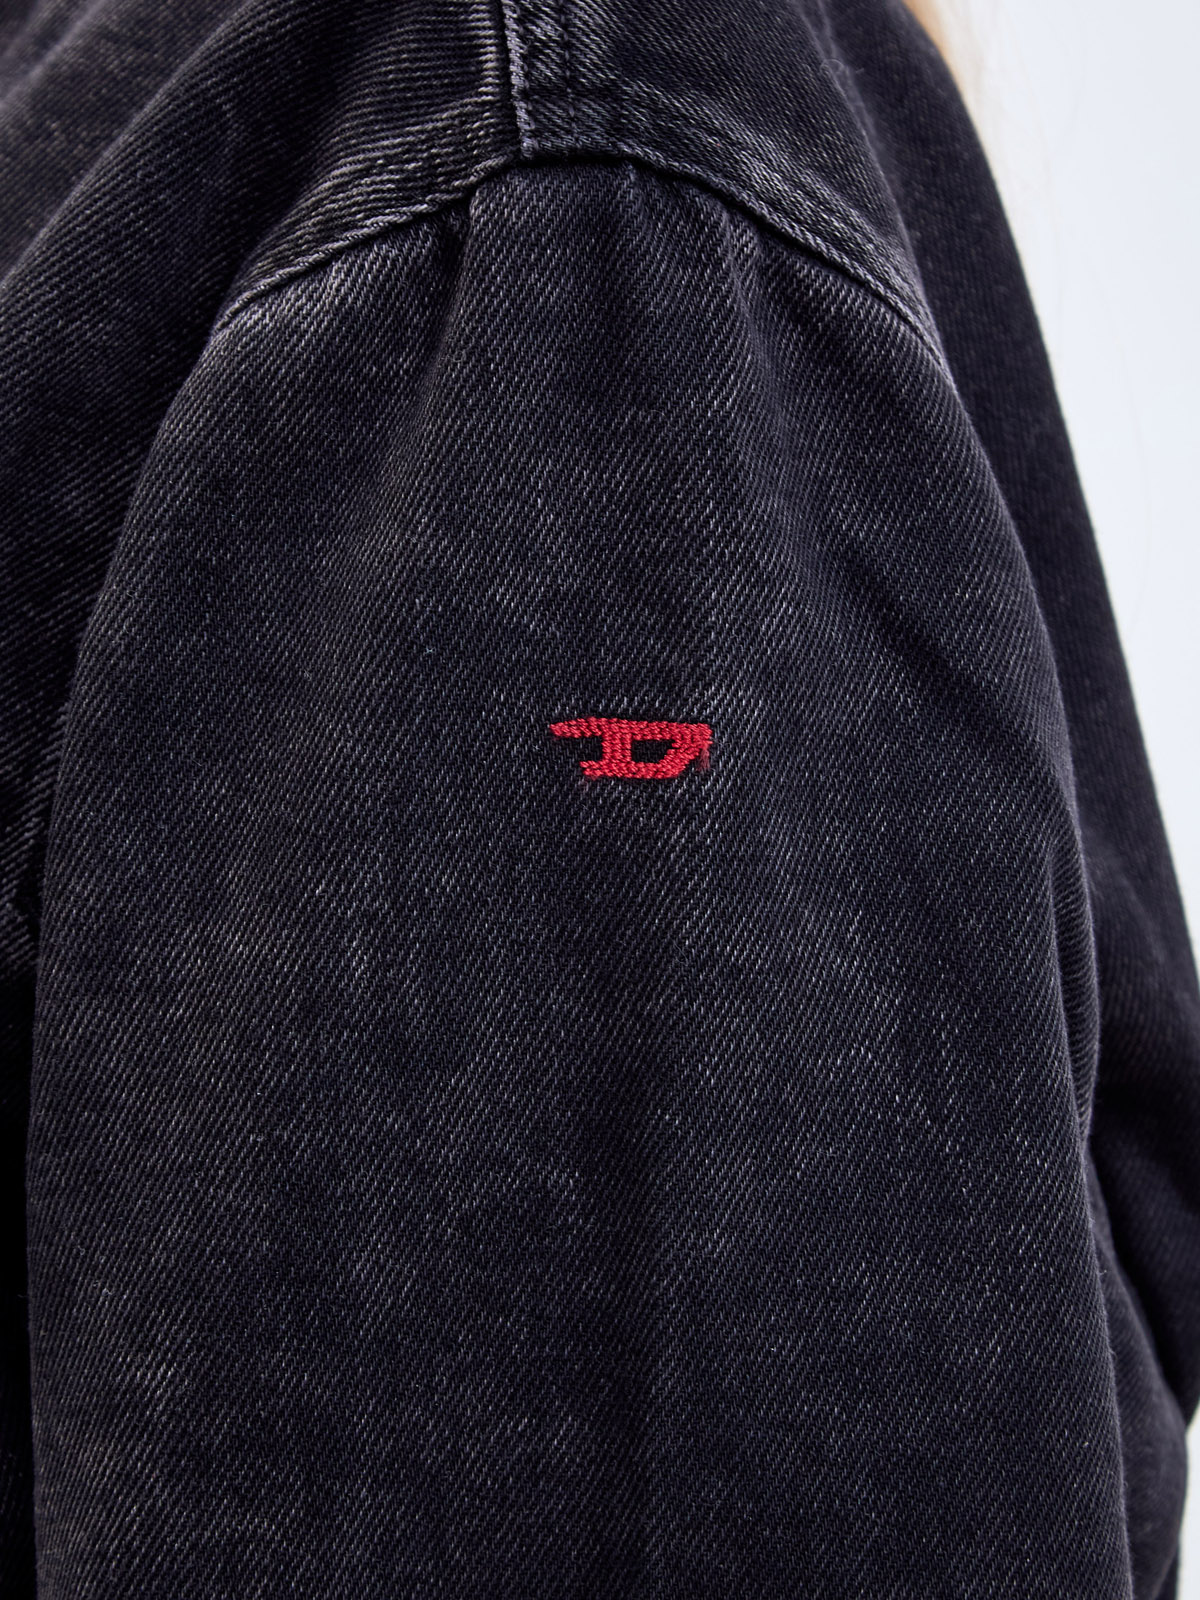 Укороченная куртка-бомбер De-Kiddo из окрашенного вручную денима DIESEL, цвет черный, размер XS;S;M - фото 5